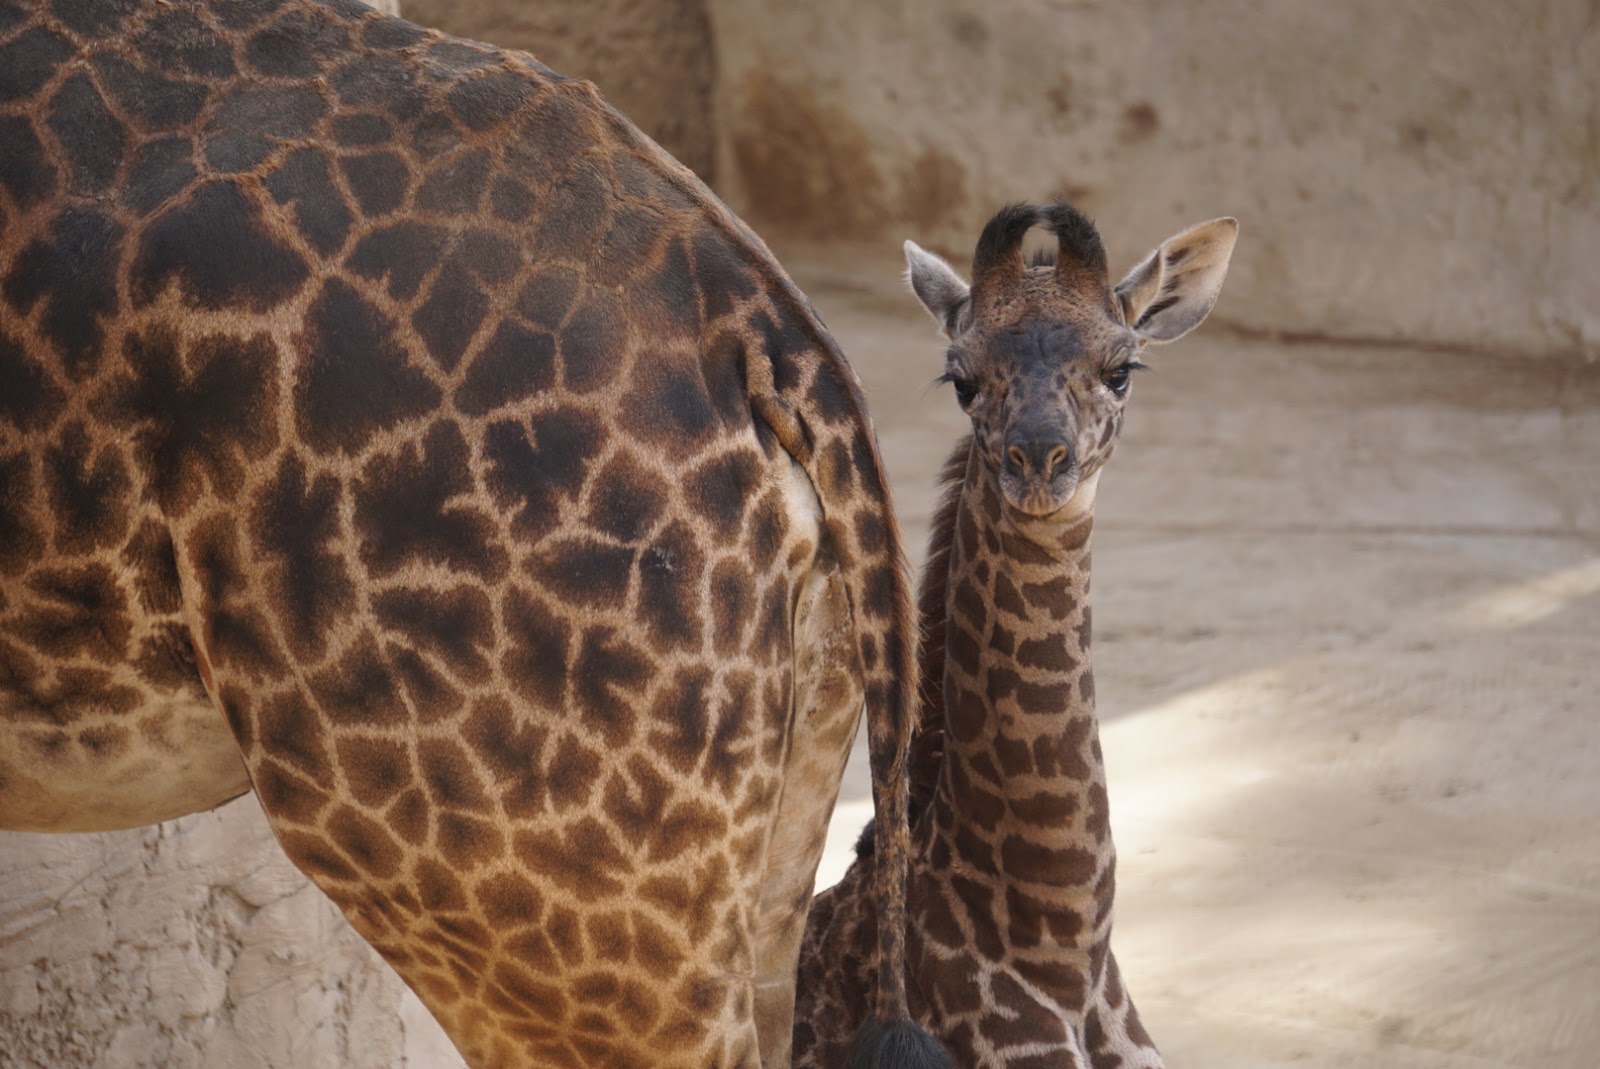 Close-up photo of a baby giraffe standing next to an adult giraffe